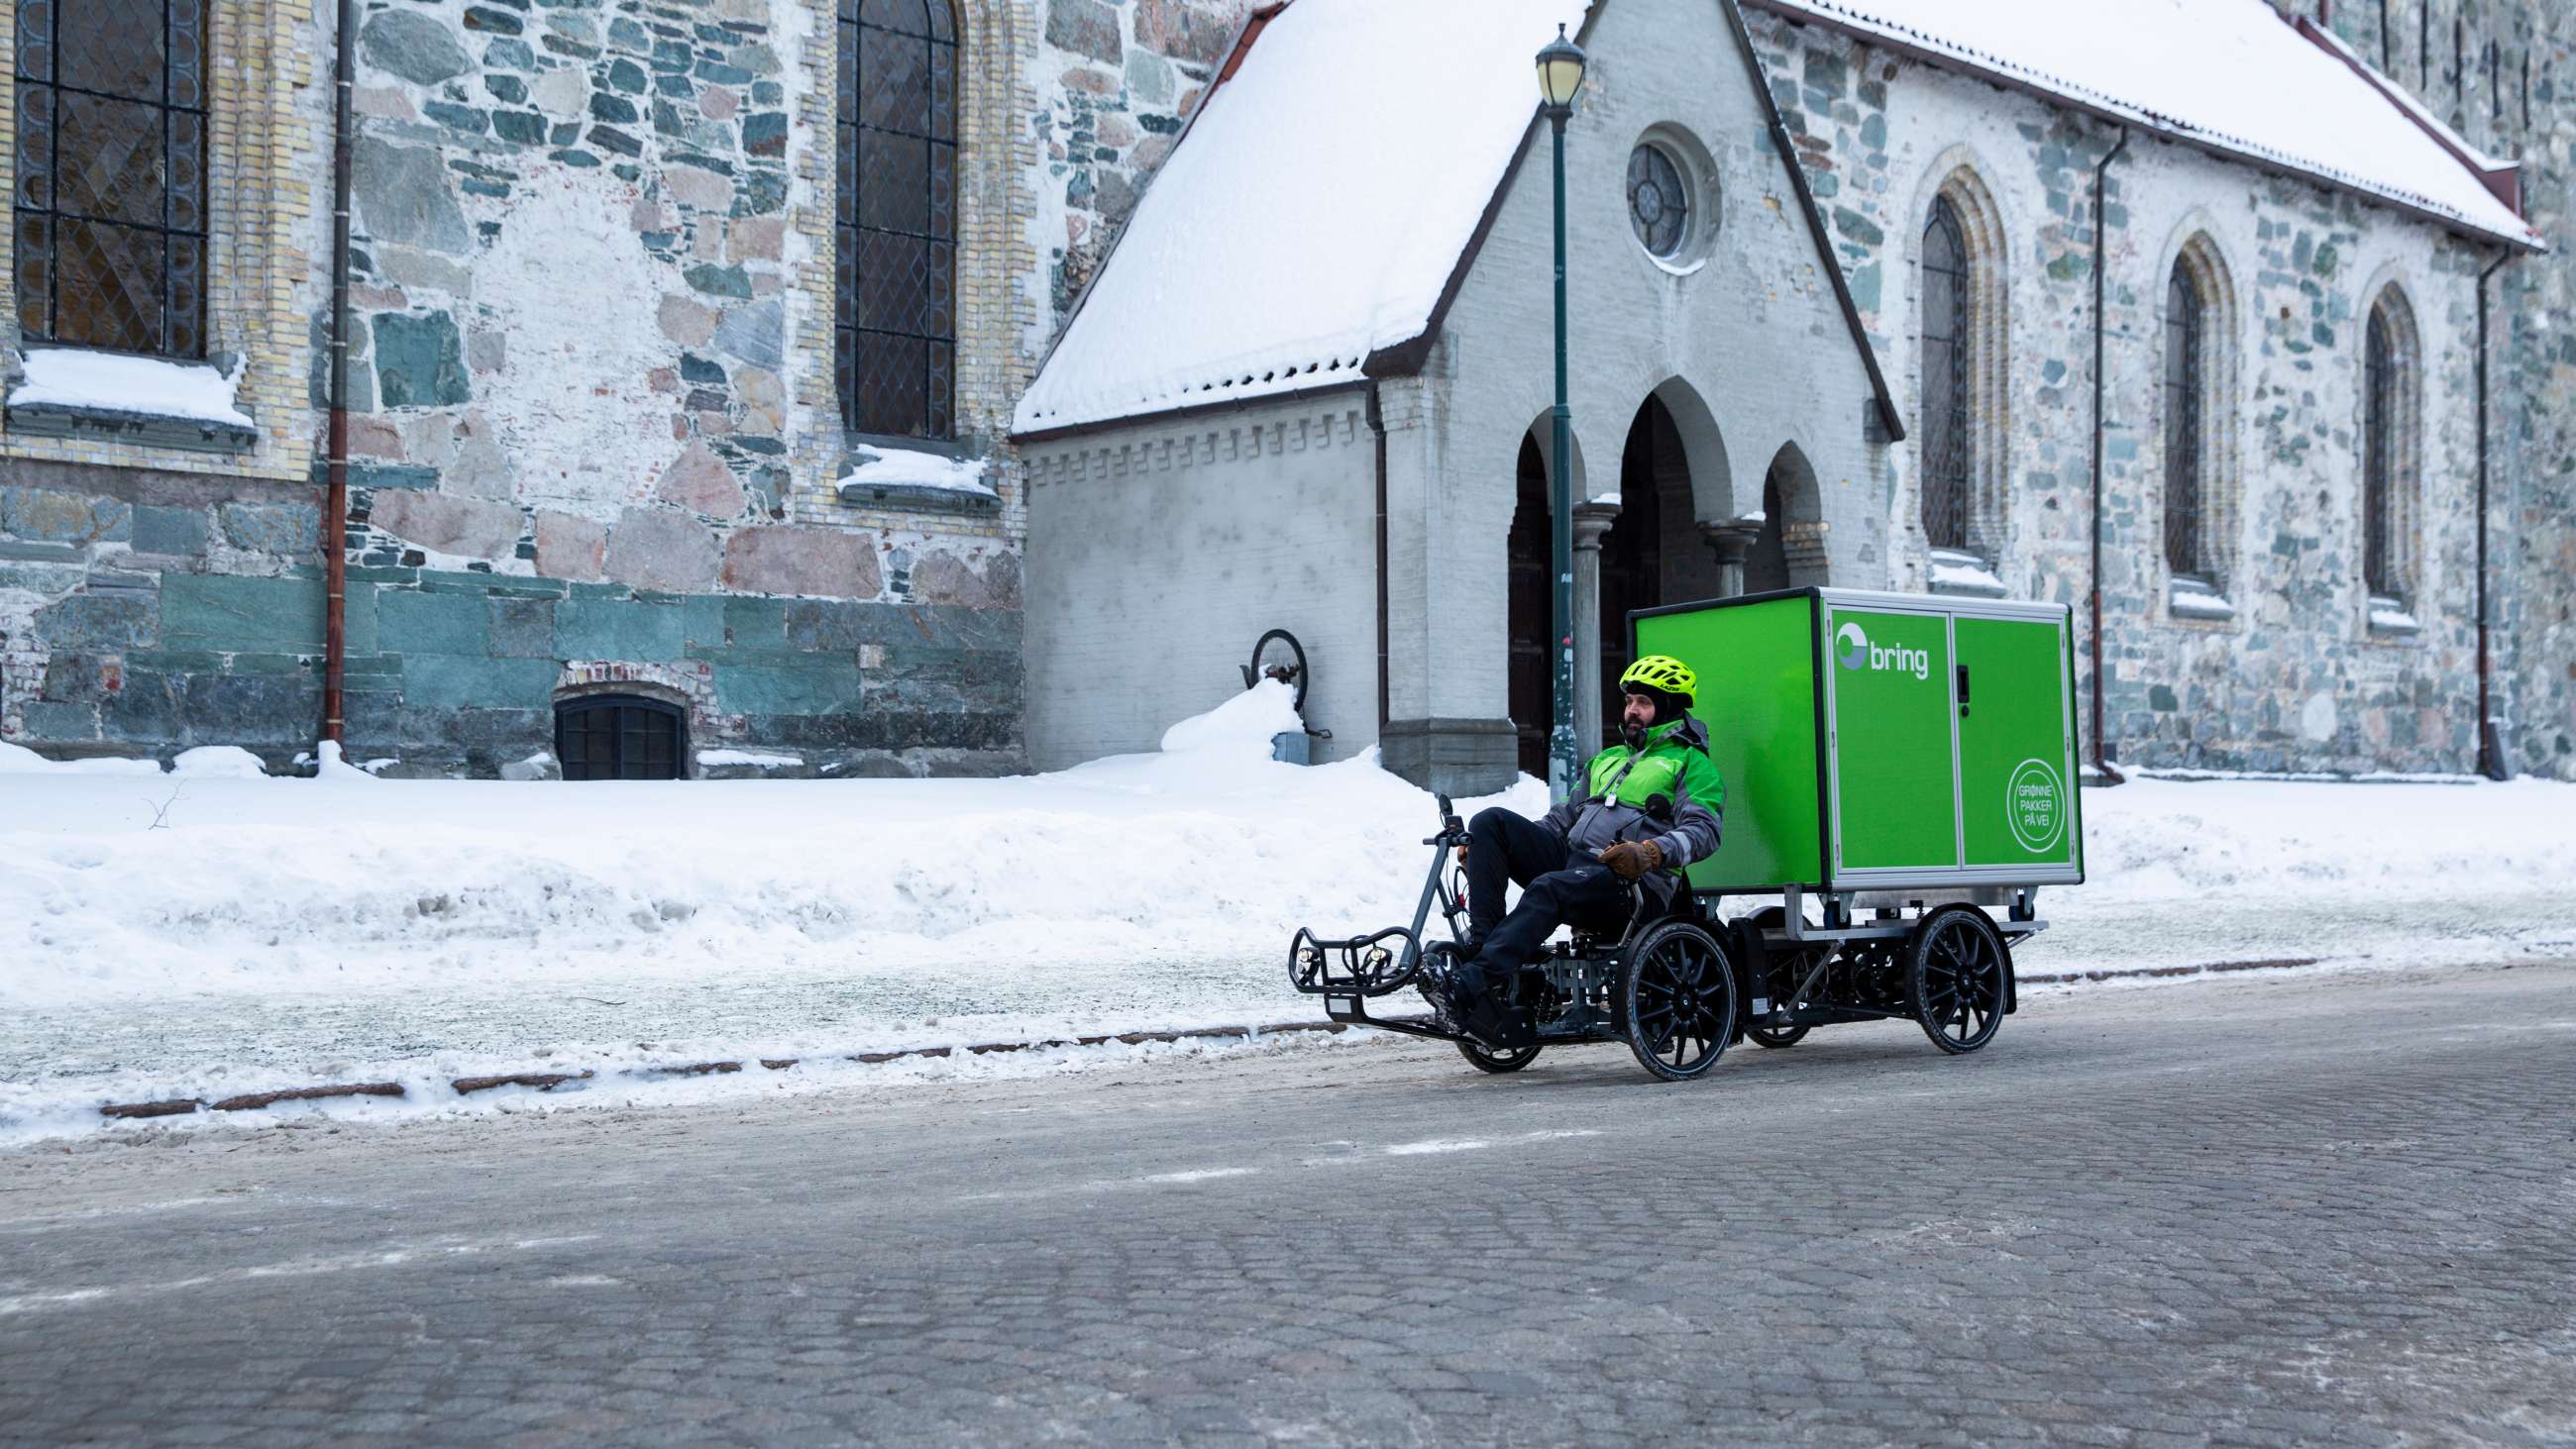 Mann i Bring-uniform sykler varesykkel med Bring-container bakpå. Vinterbilde fra Trondheim.